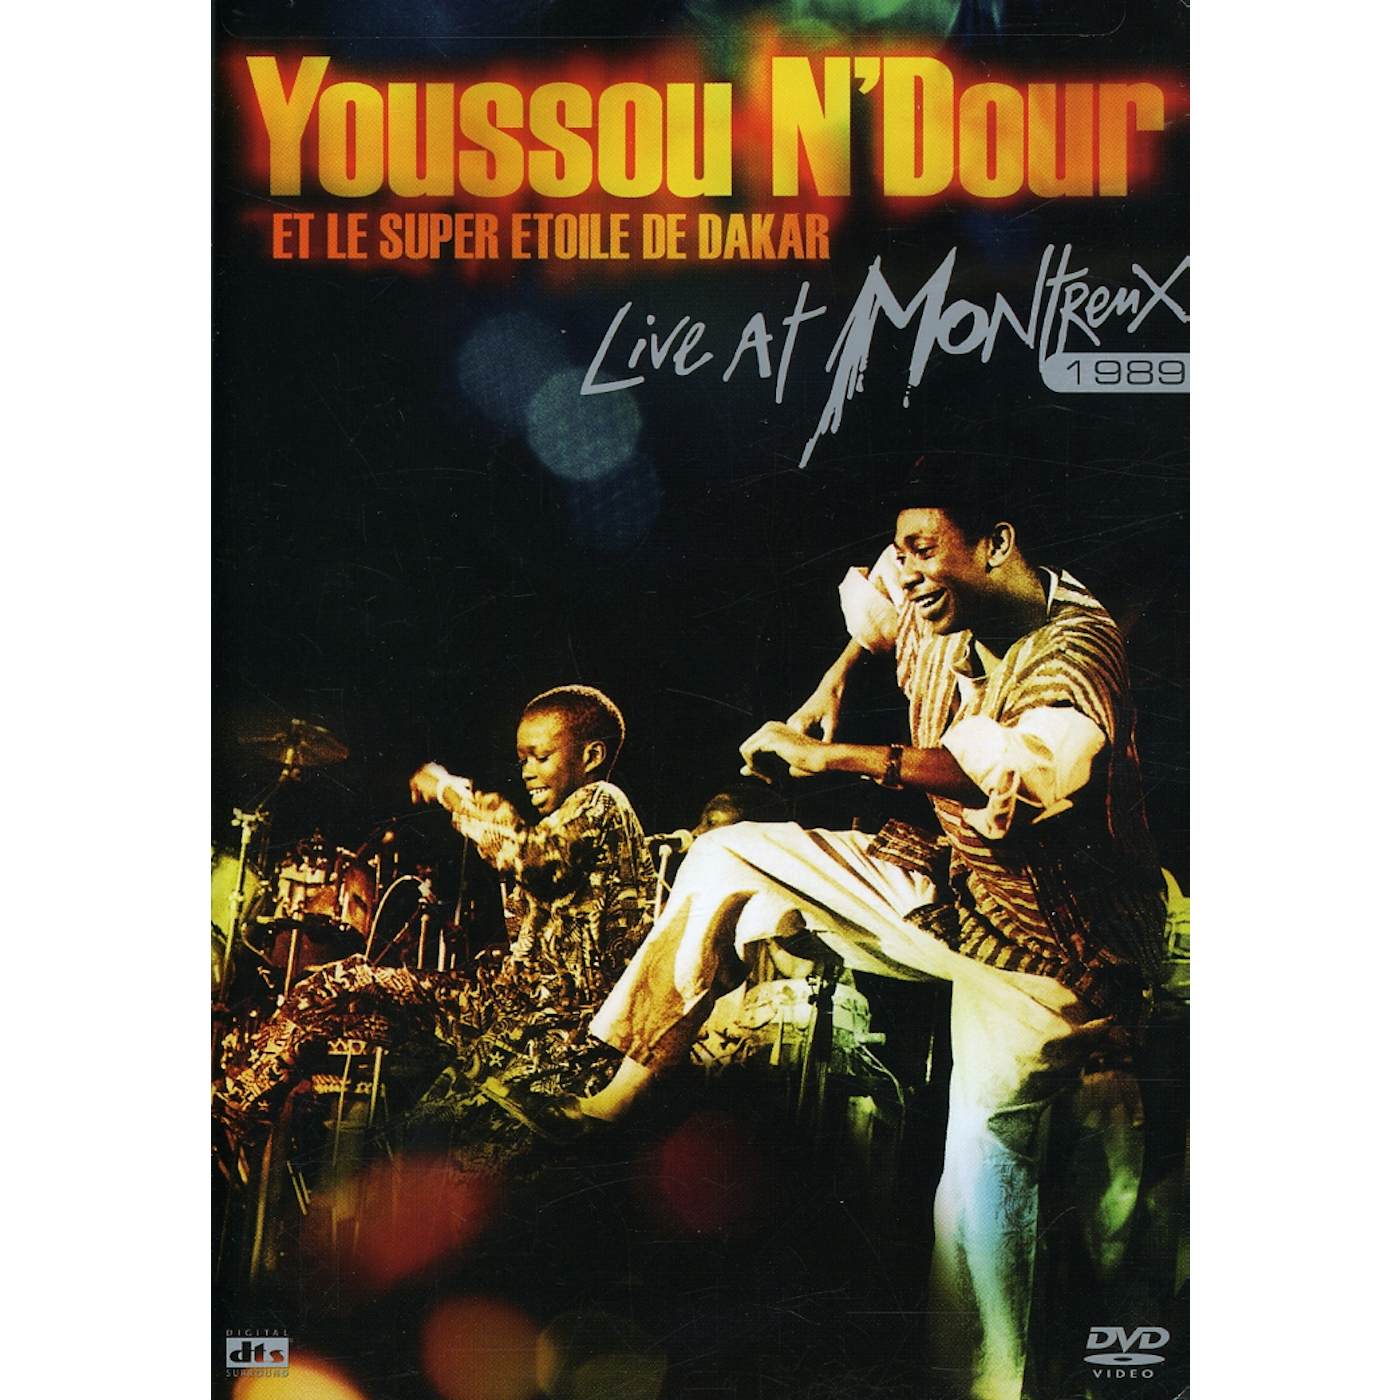 Youssou N'Dour LIVE AT MONTREUX 1989 DVD